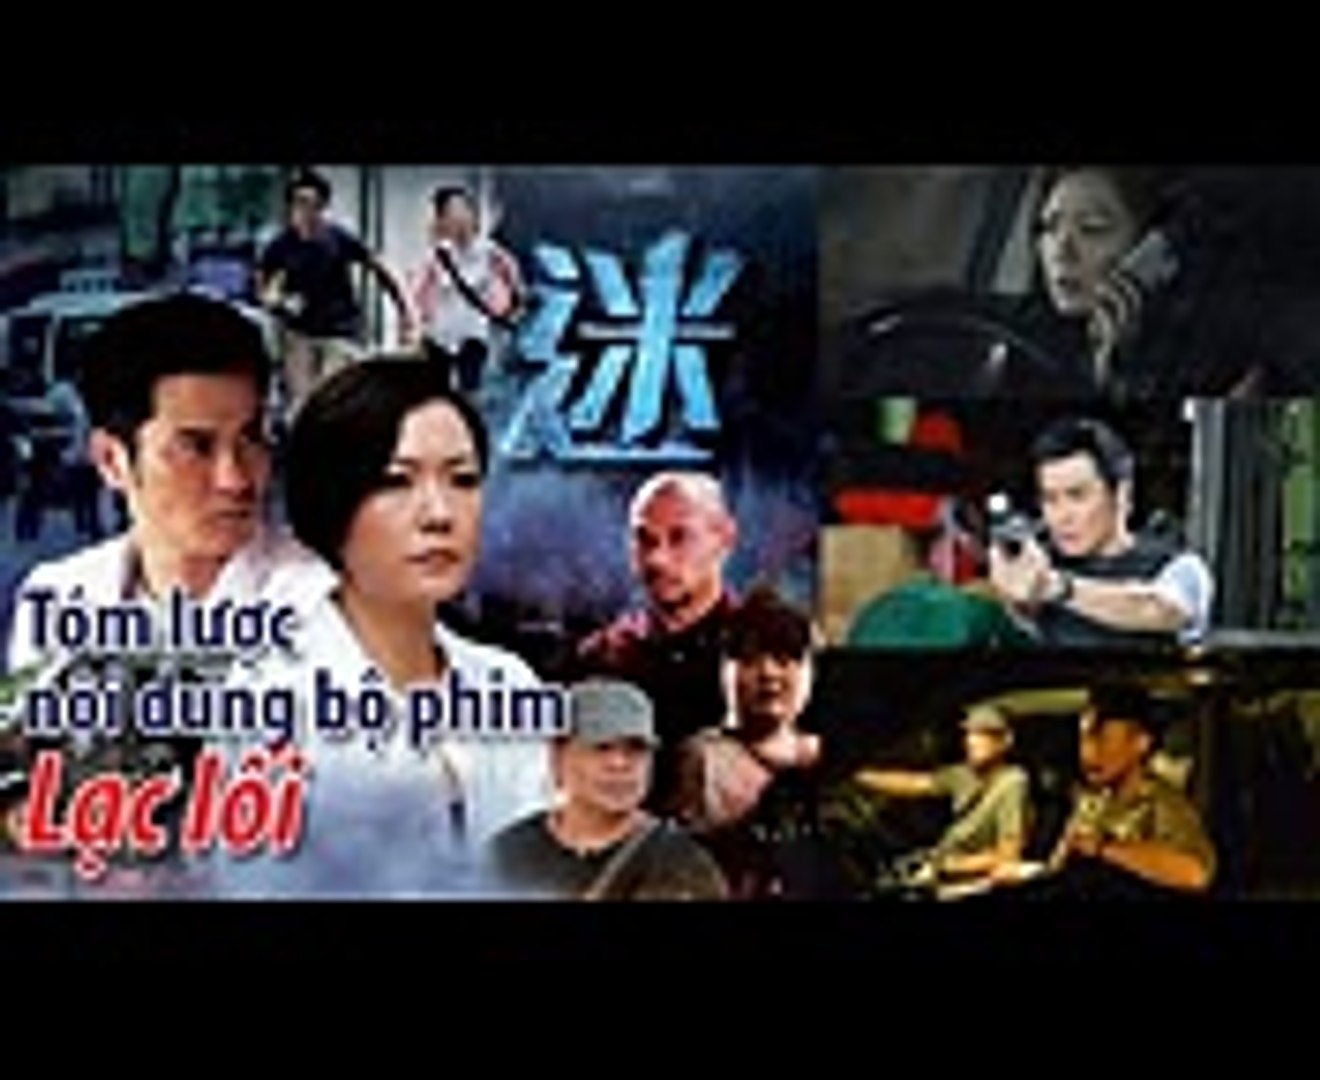 ⁣Phim TVB Tóm lược nội dung bộ phim Lạc lối